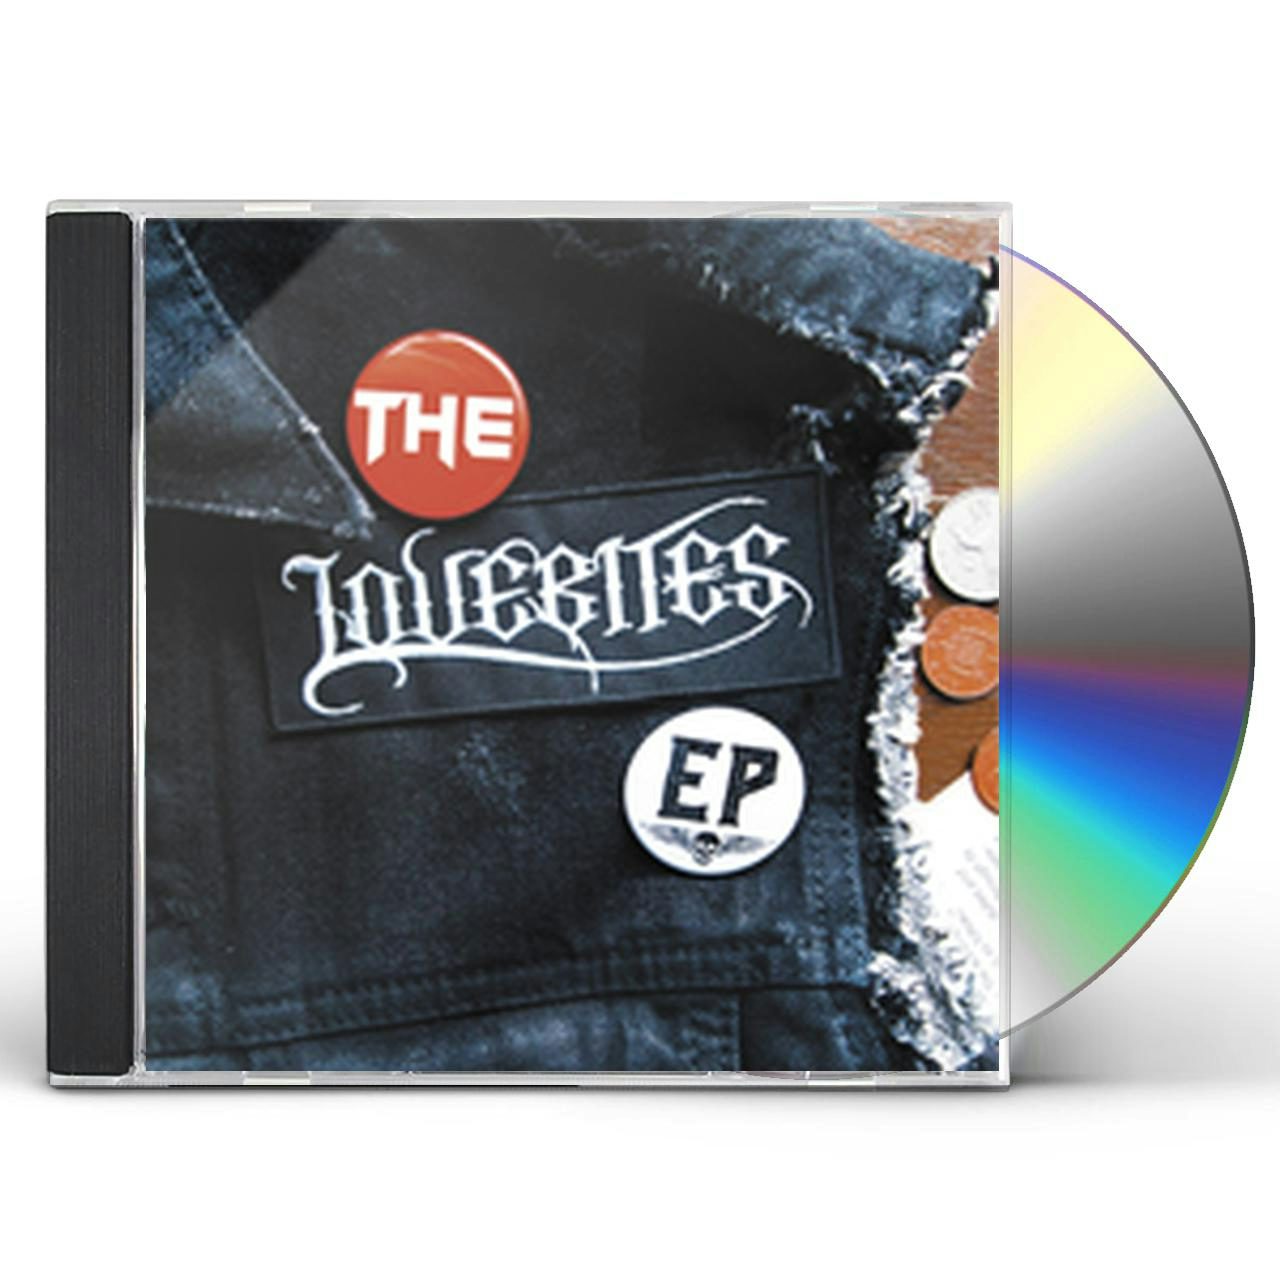 LOVEBITES Store: Official Merch & Vinyl